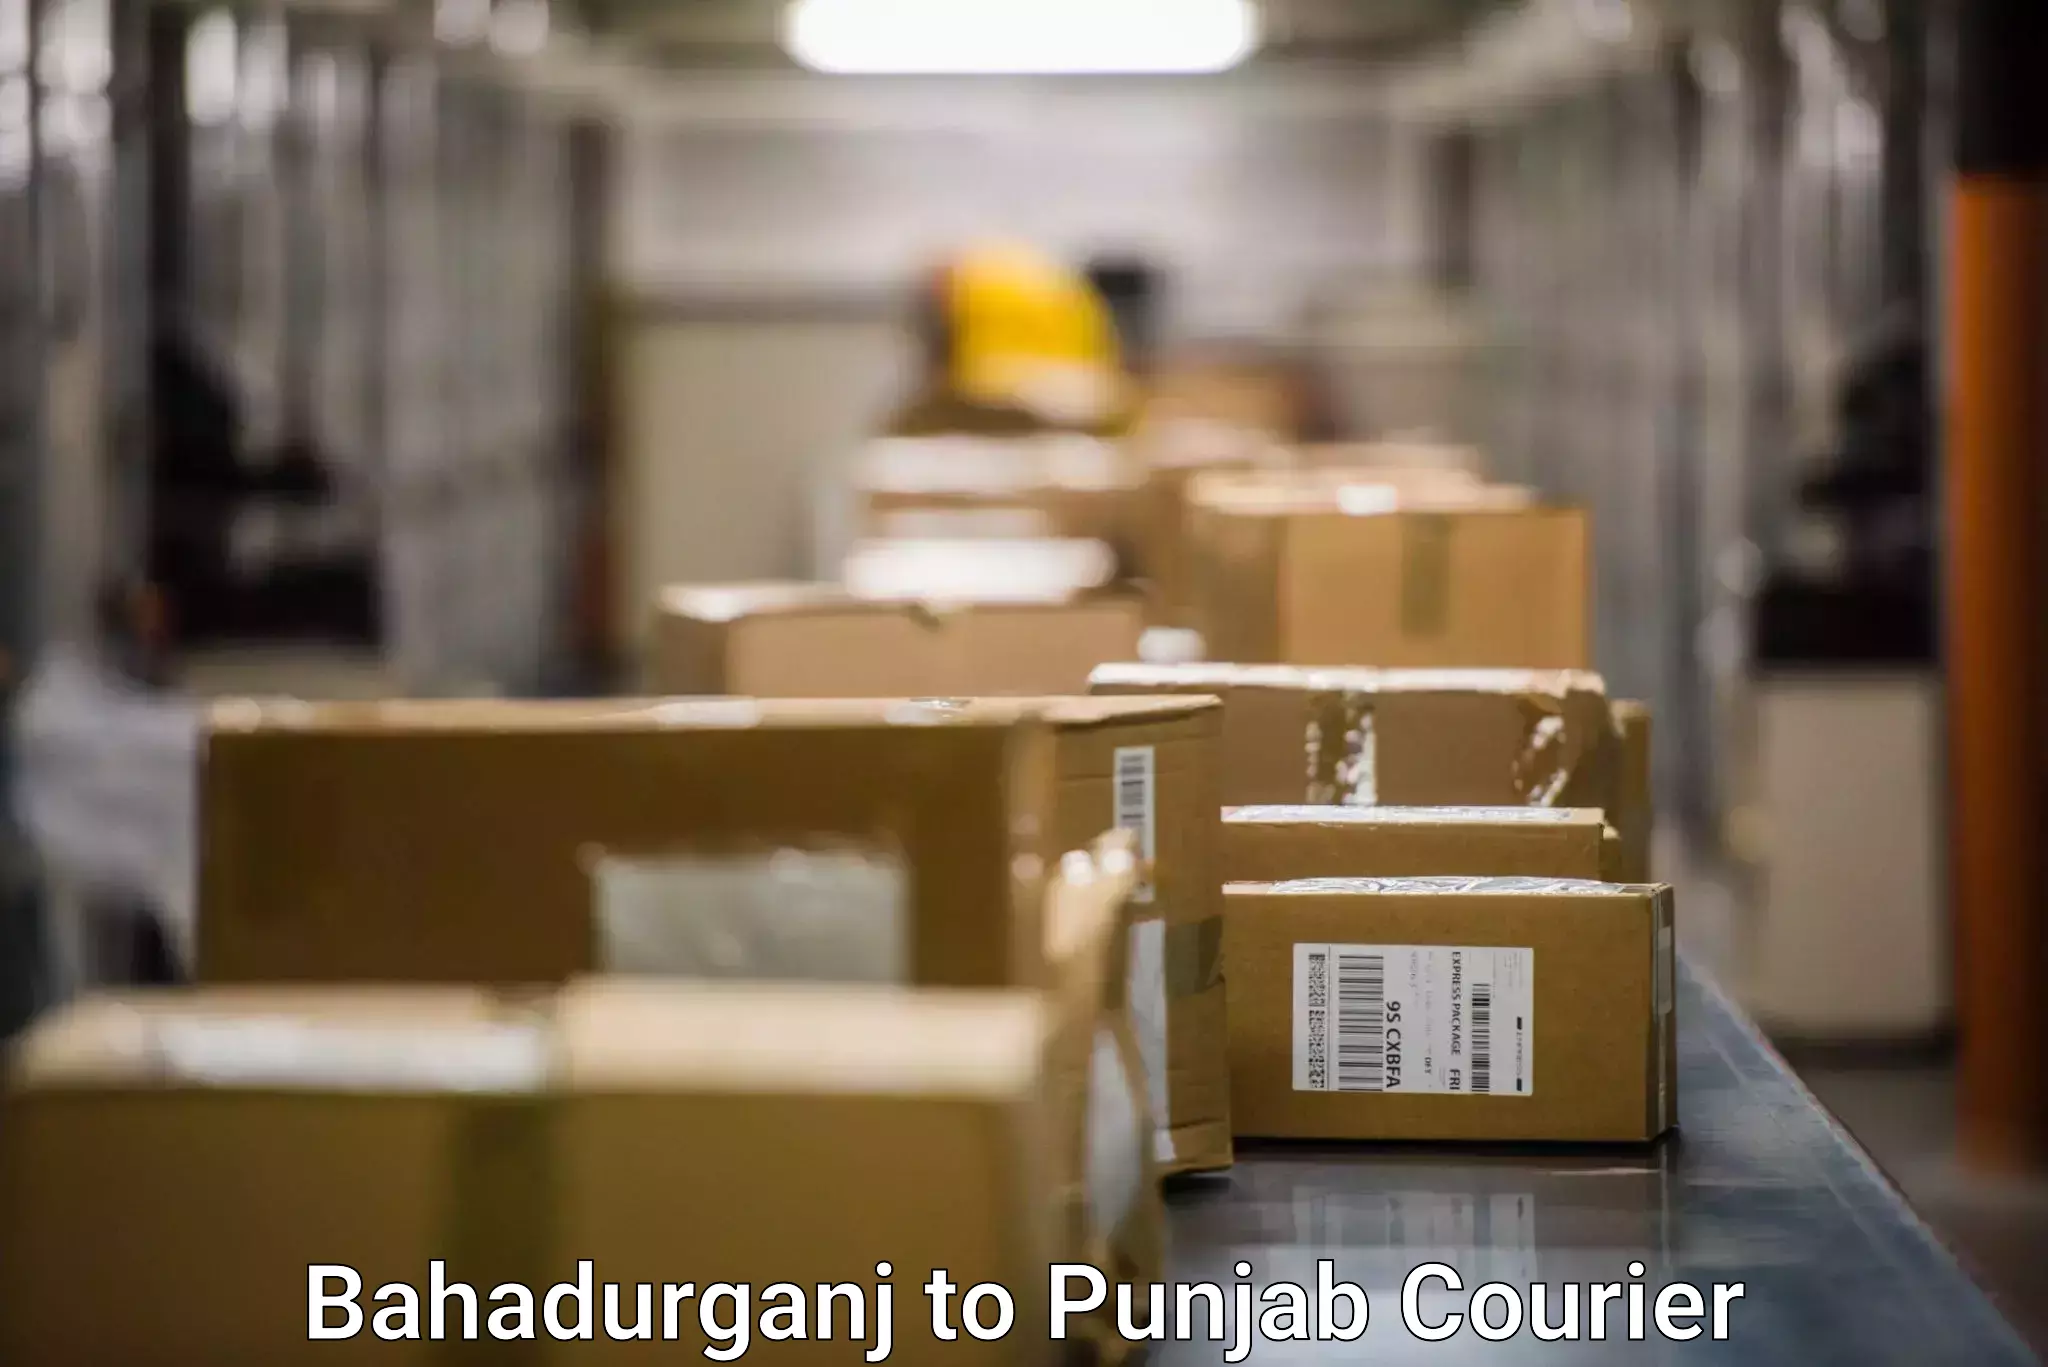 International parcel service Bahadurganj to Bathinda